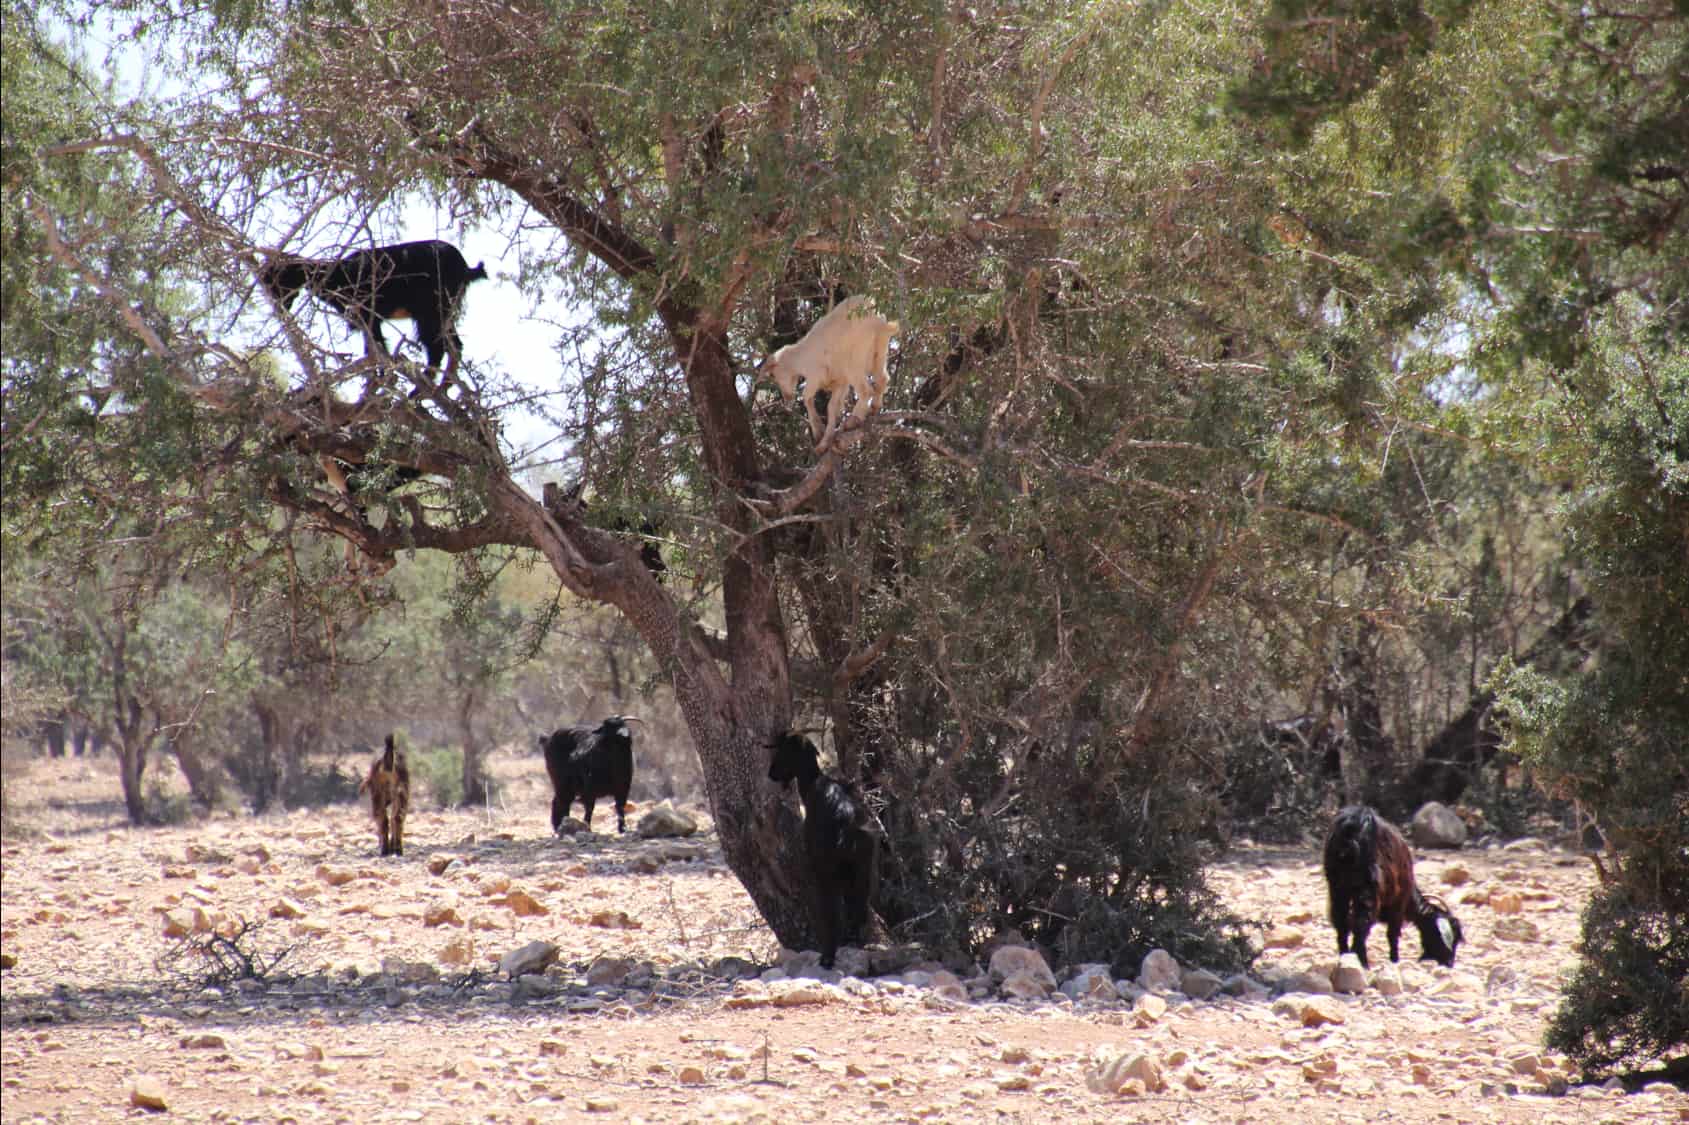 Goats on argain oil trees